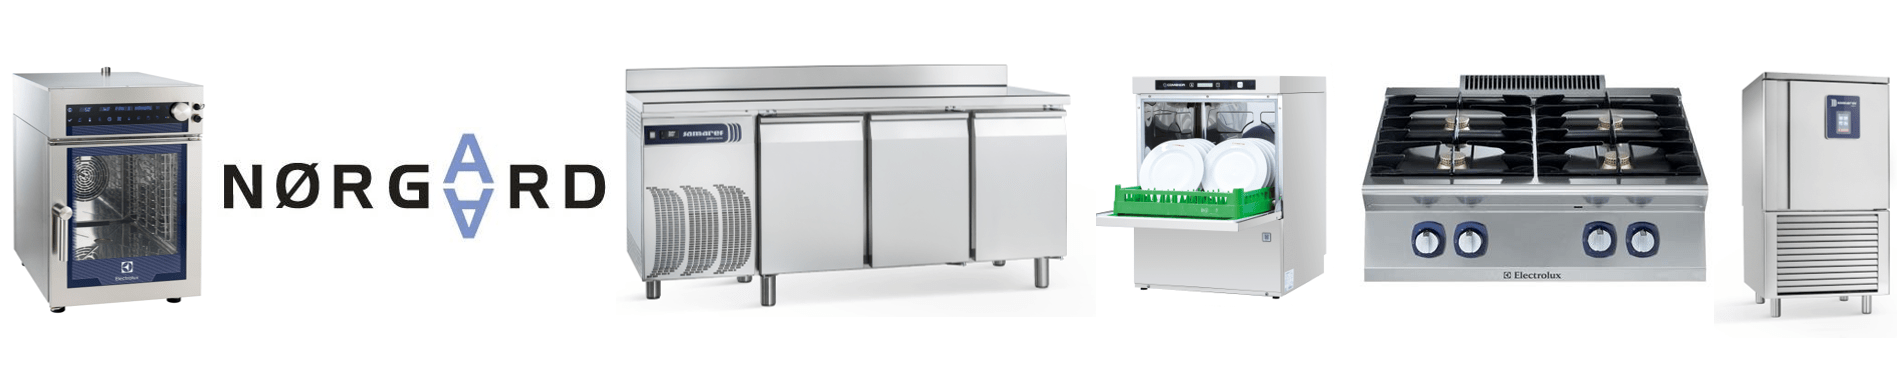 Wilno Rustfri ApS – Suppler din ordre med storkøkkenmaskiner fra Nørgaard Storkøkkener